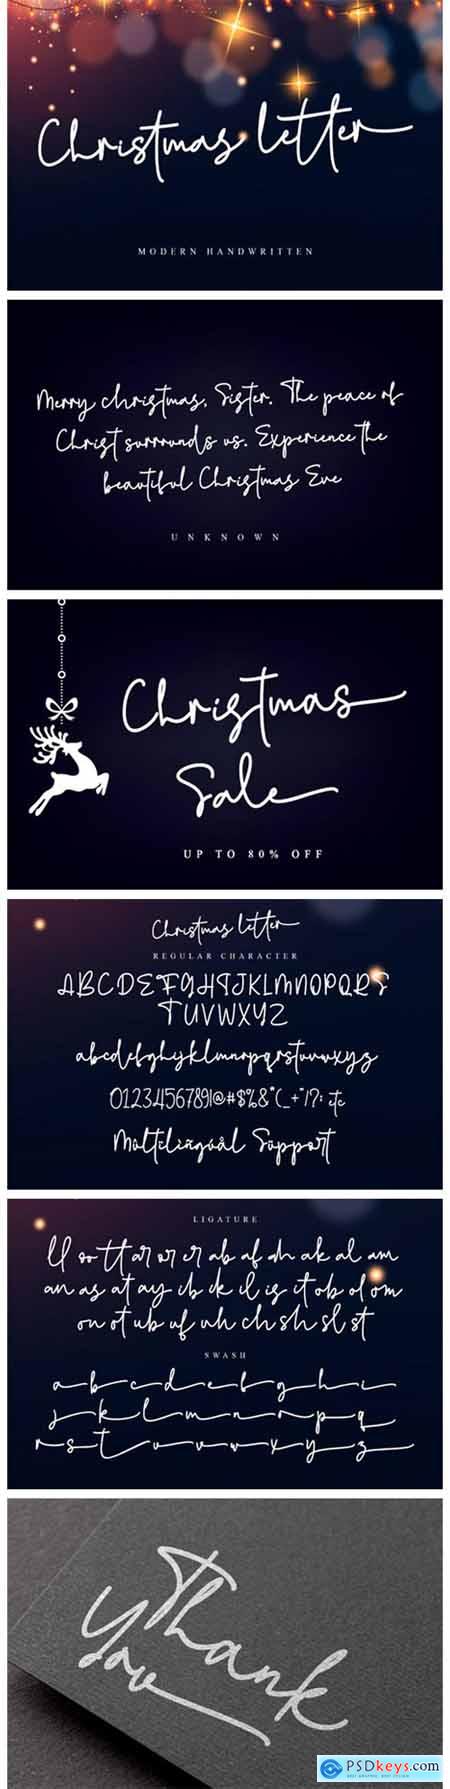 Christmas Letter Font